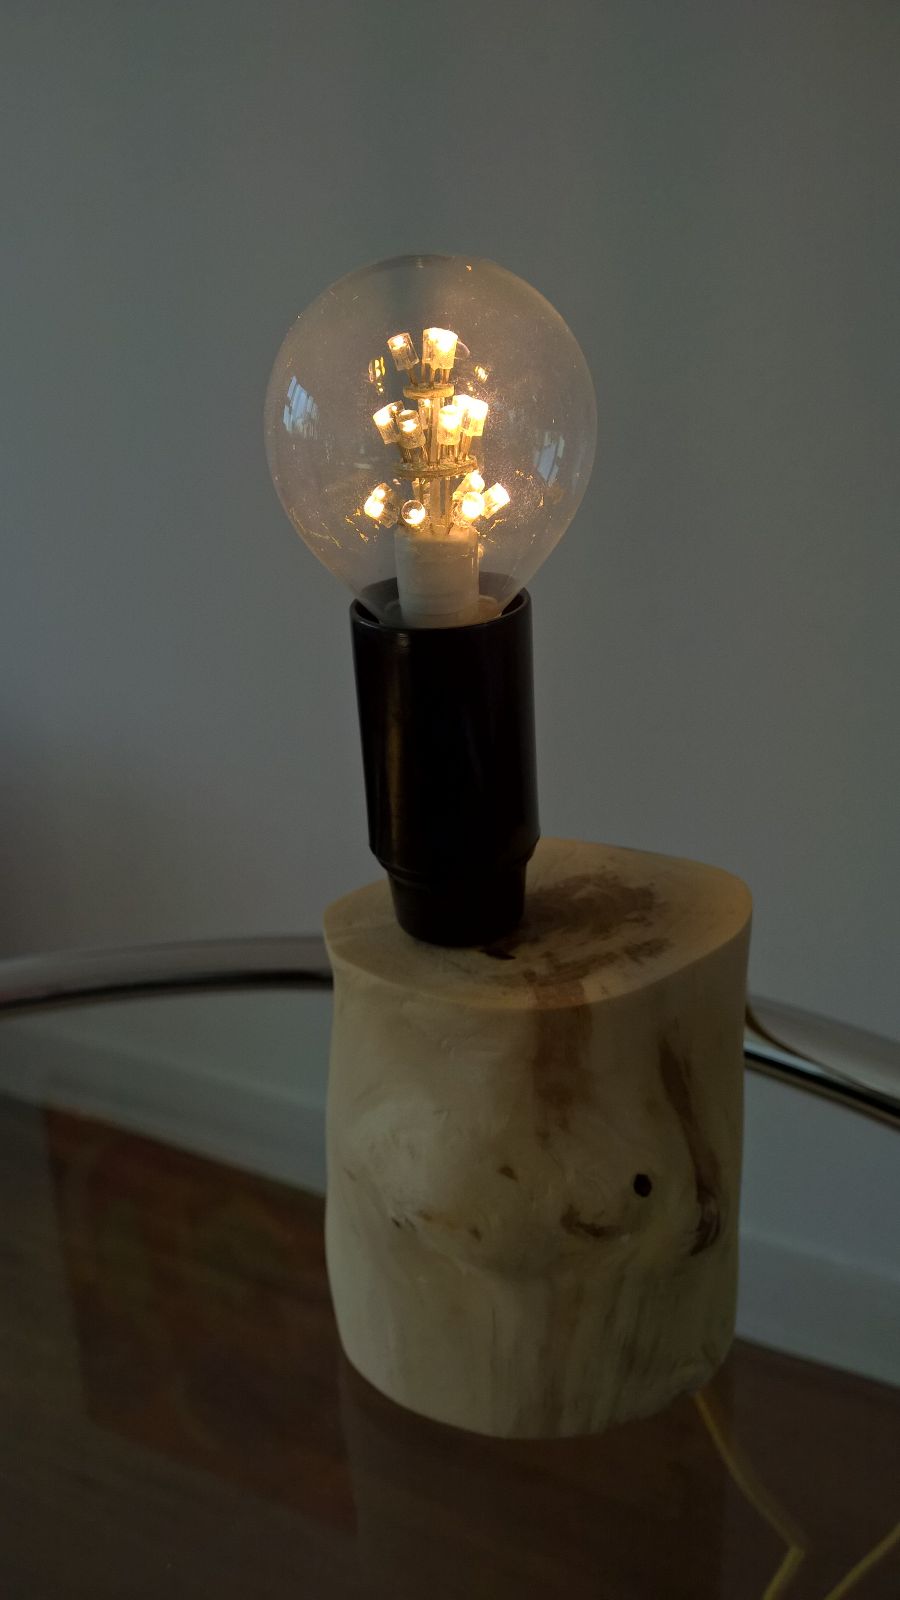 Deze led-lamp heeft een zeer warme uitstraling